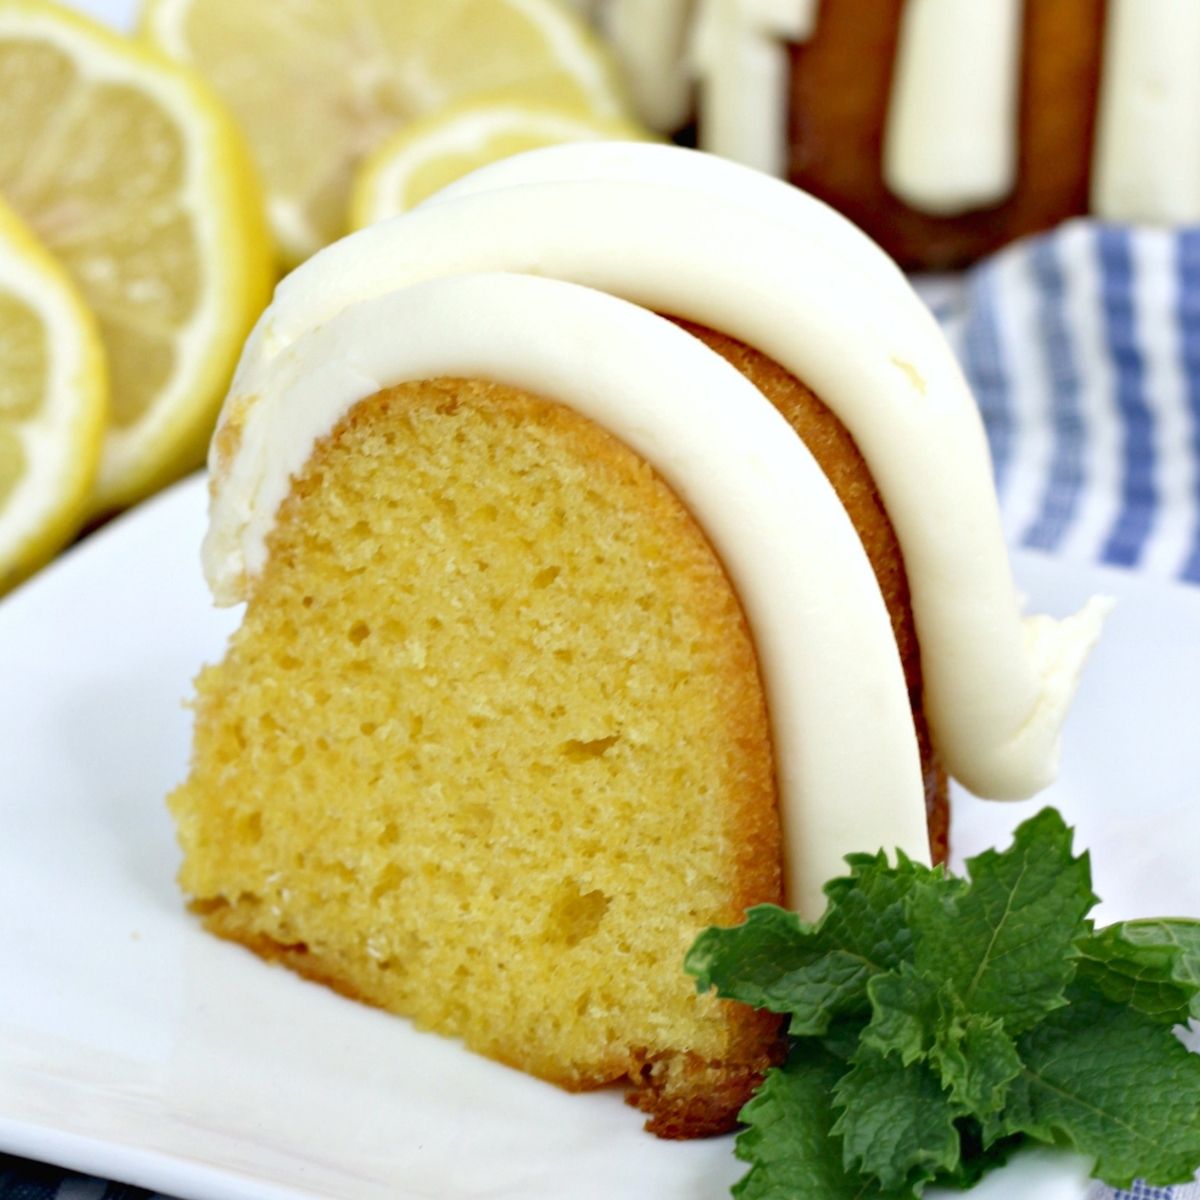 Details 59+ lemon soaked pound cake latest - awesomeenglish.edu.vn